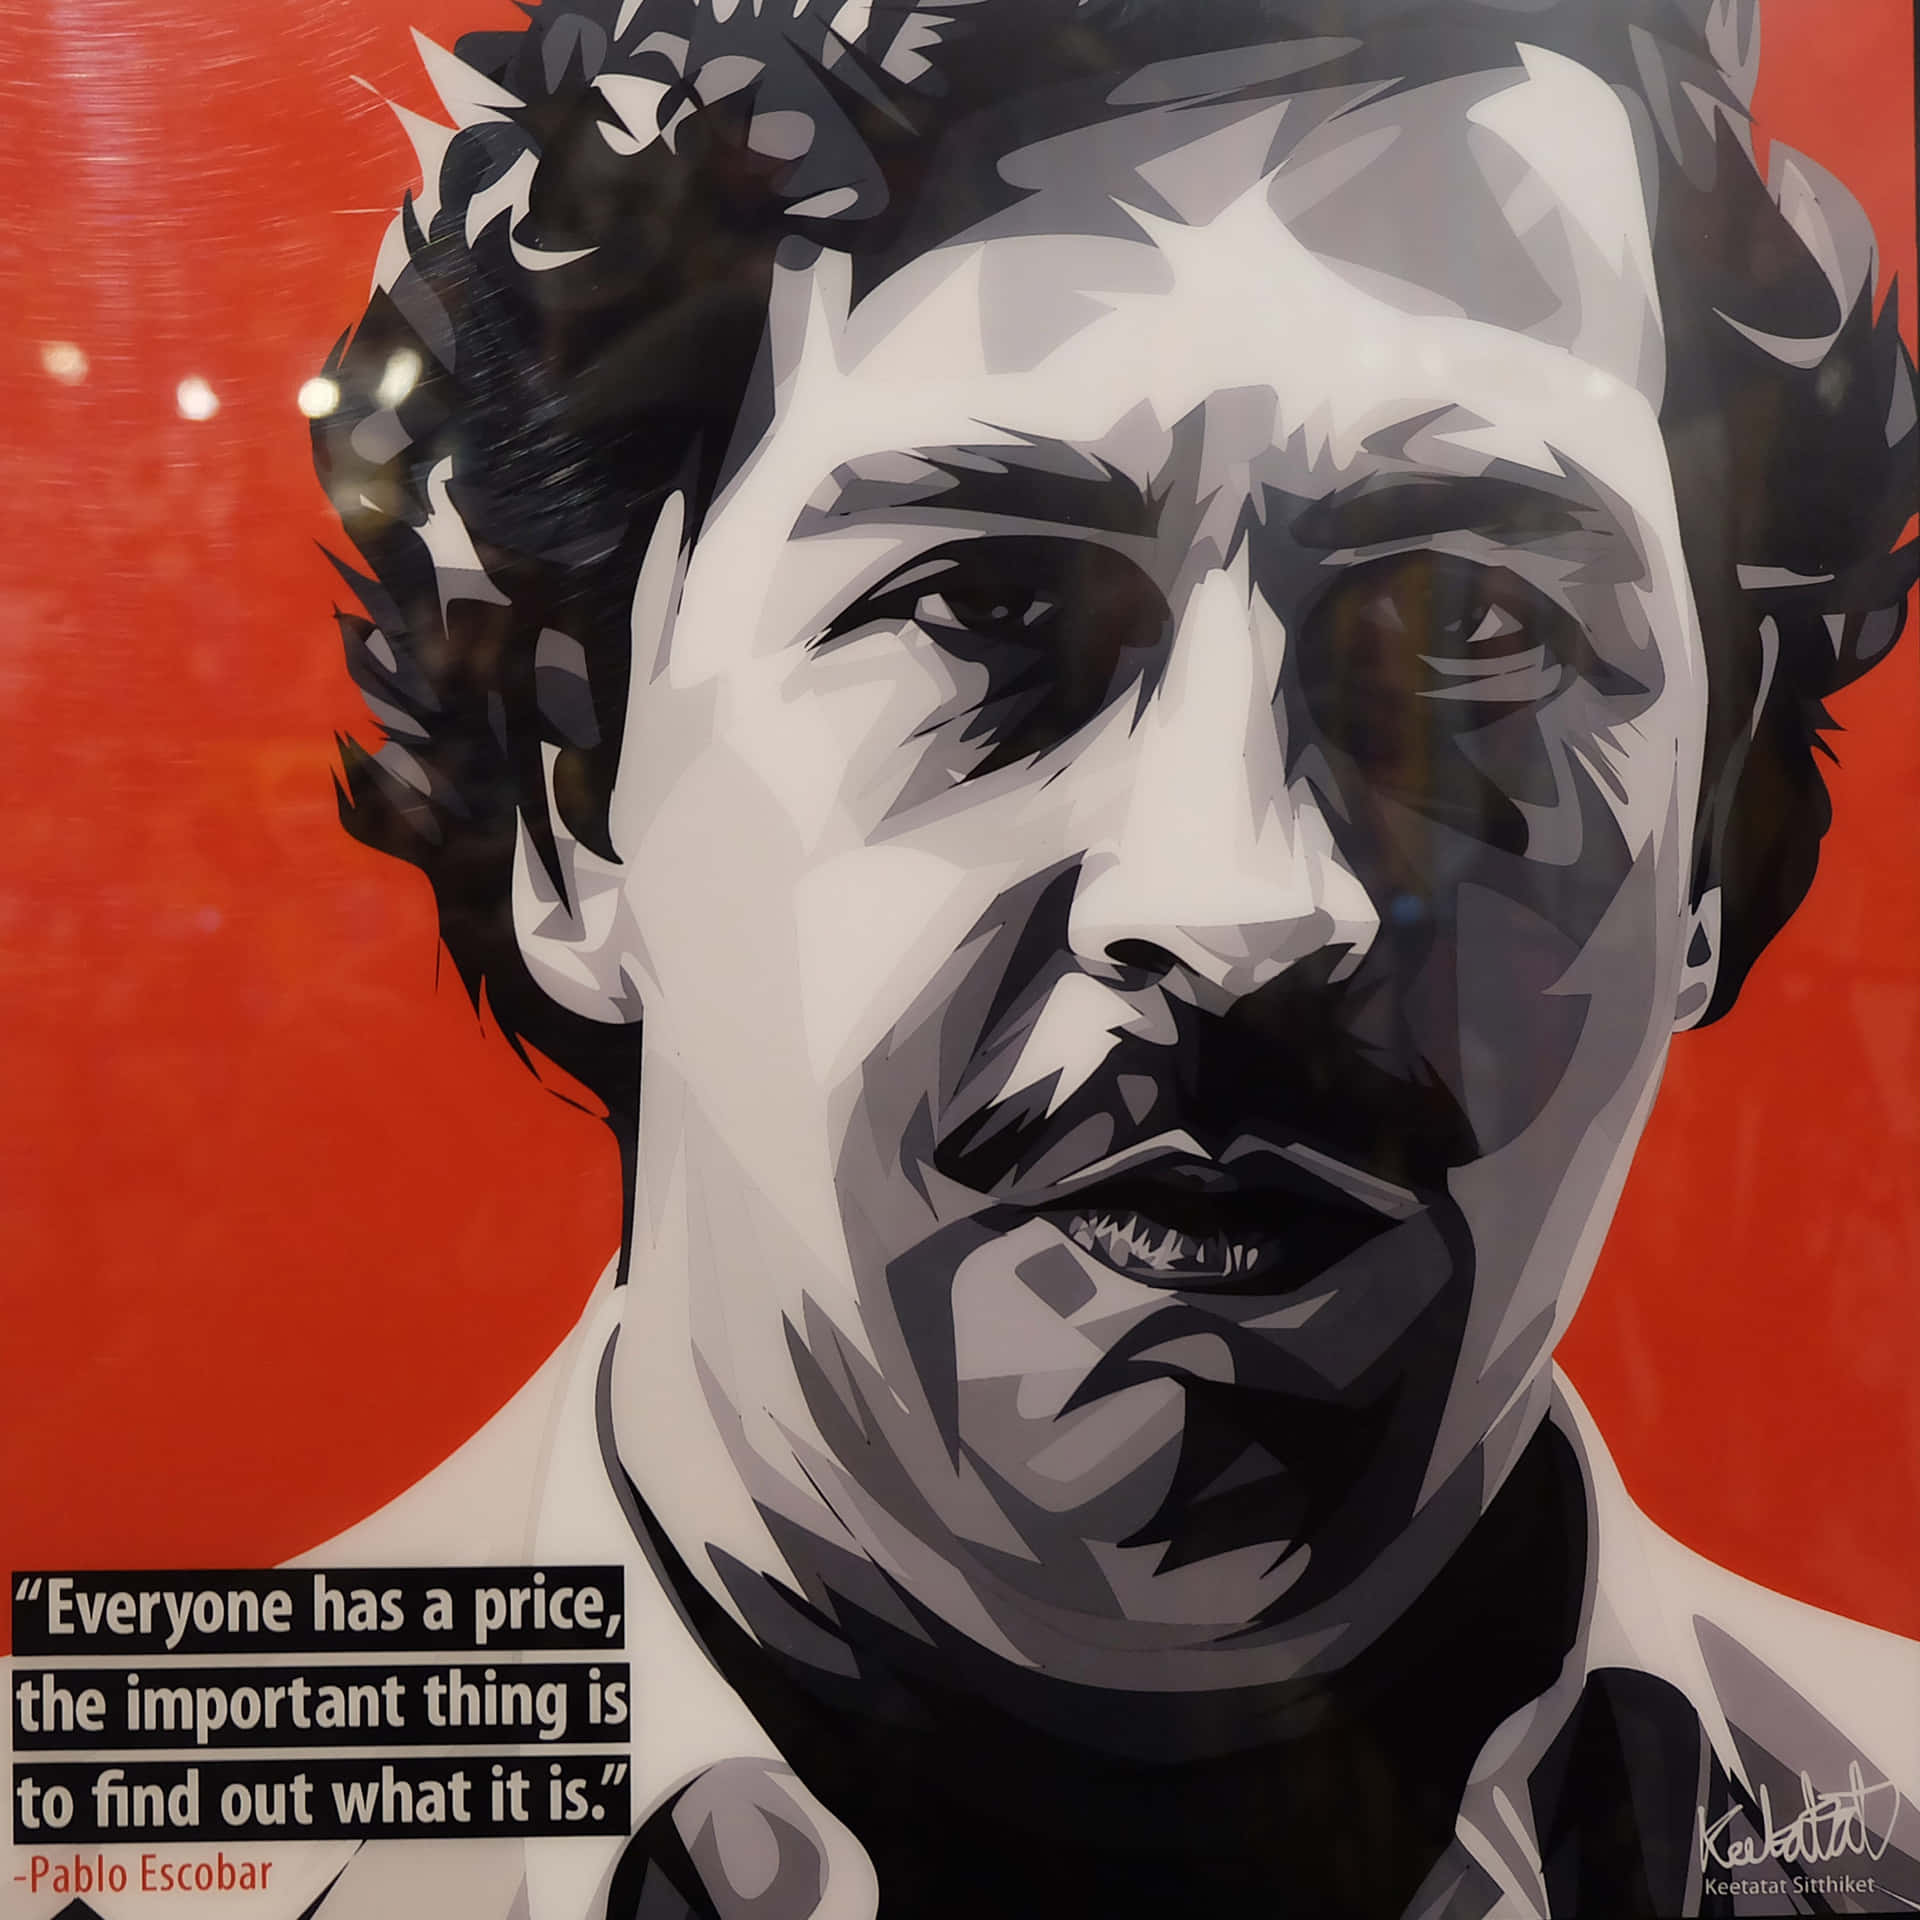 Pablo Escobar - Drug Lord